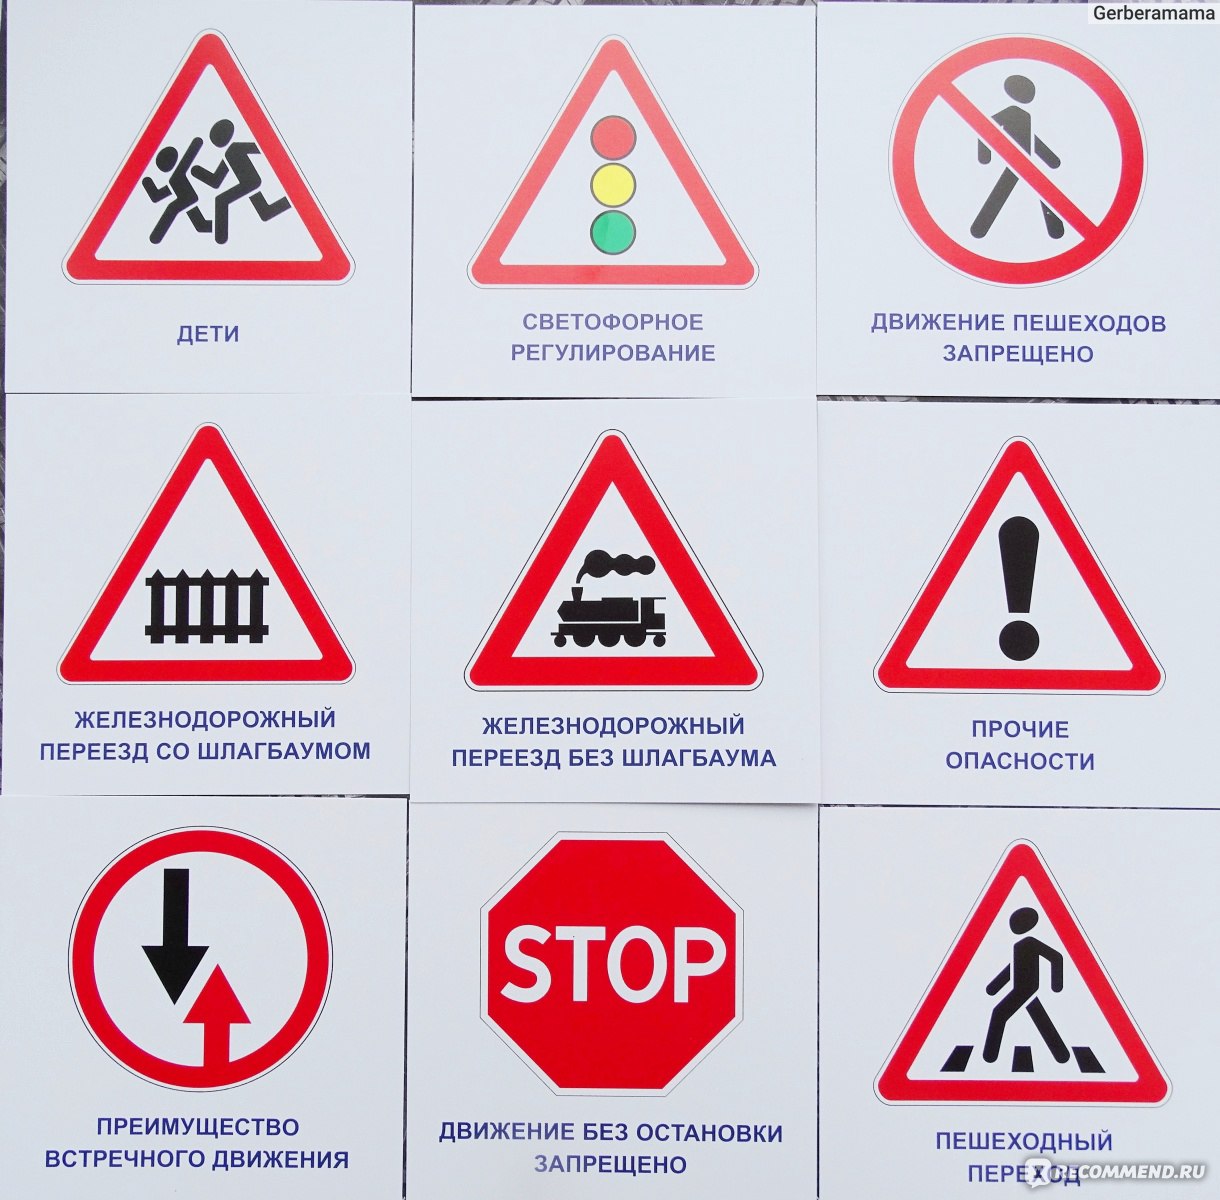 дорожные знаки белоруссии с разъяснениями фото